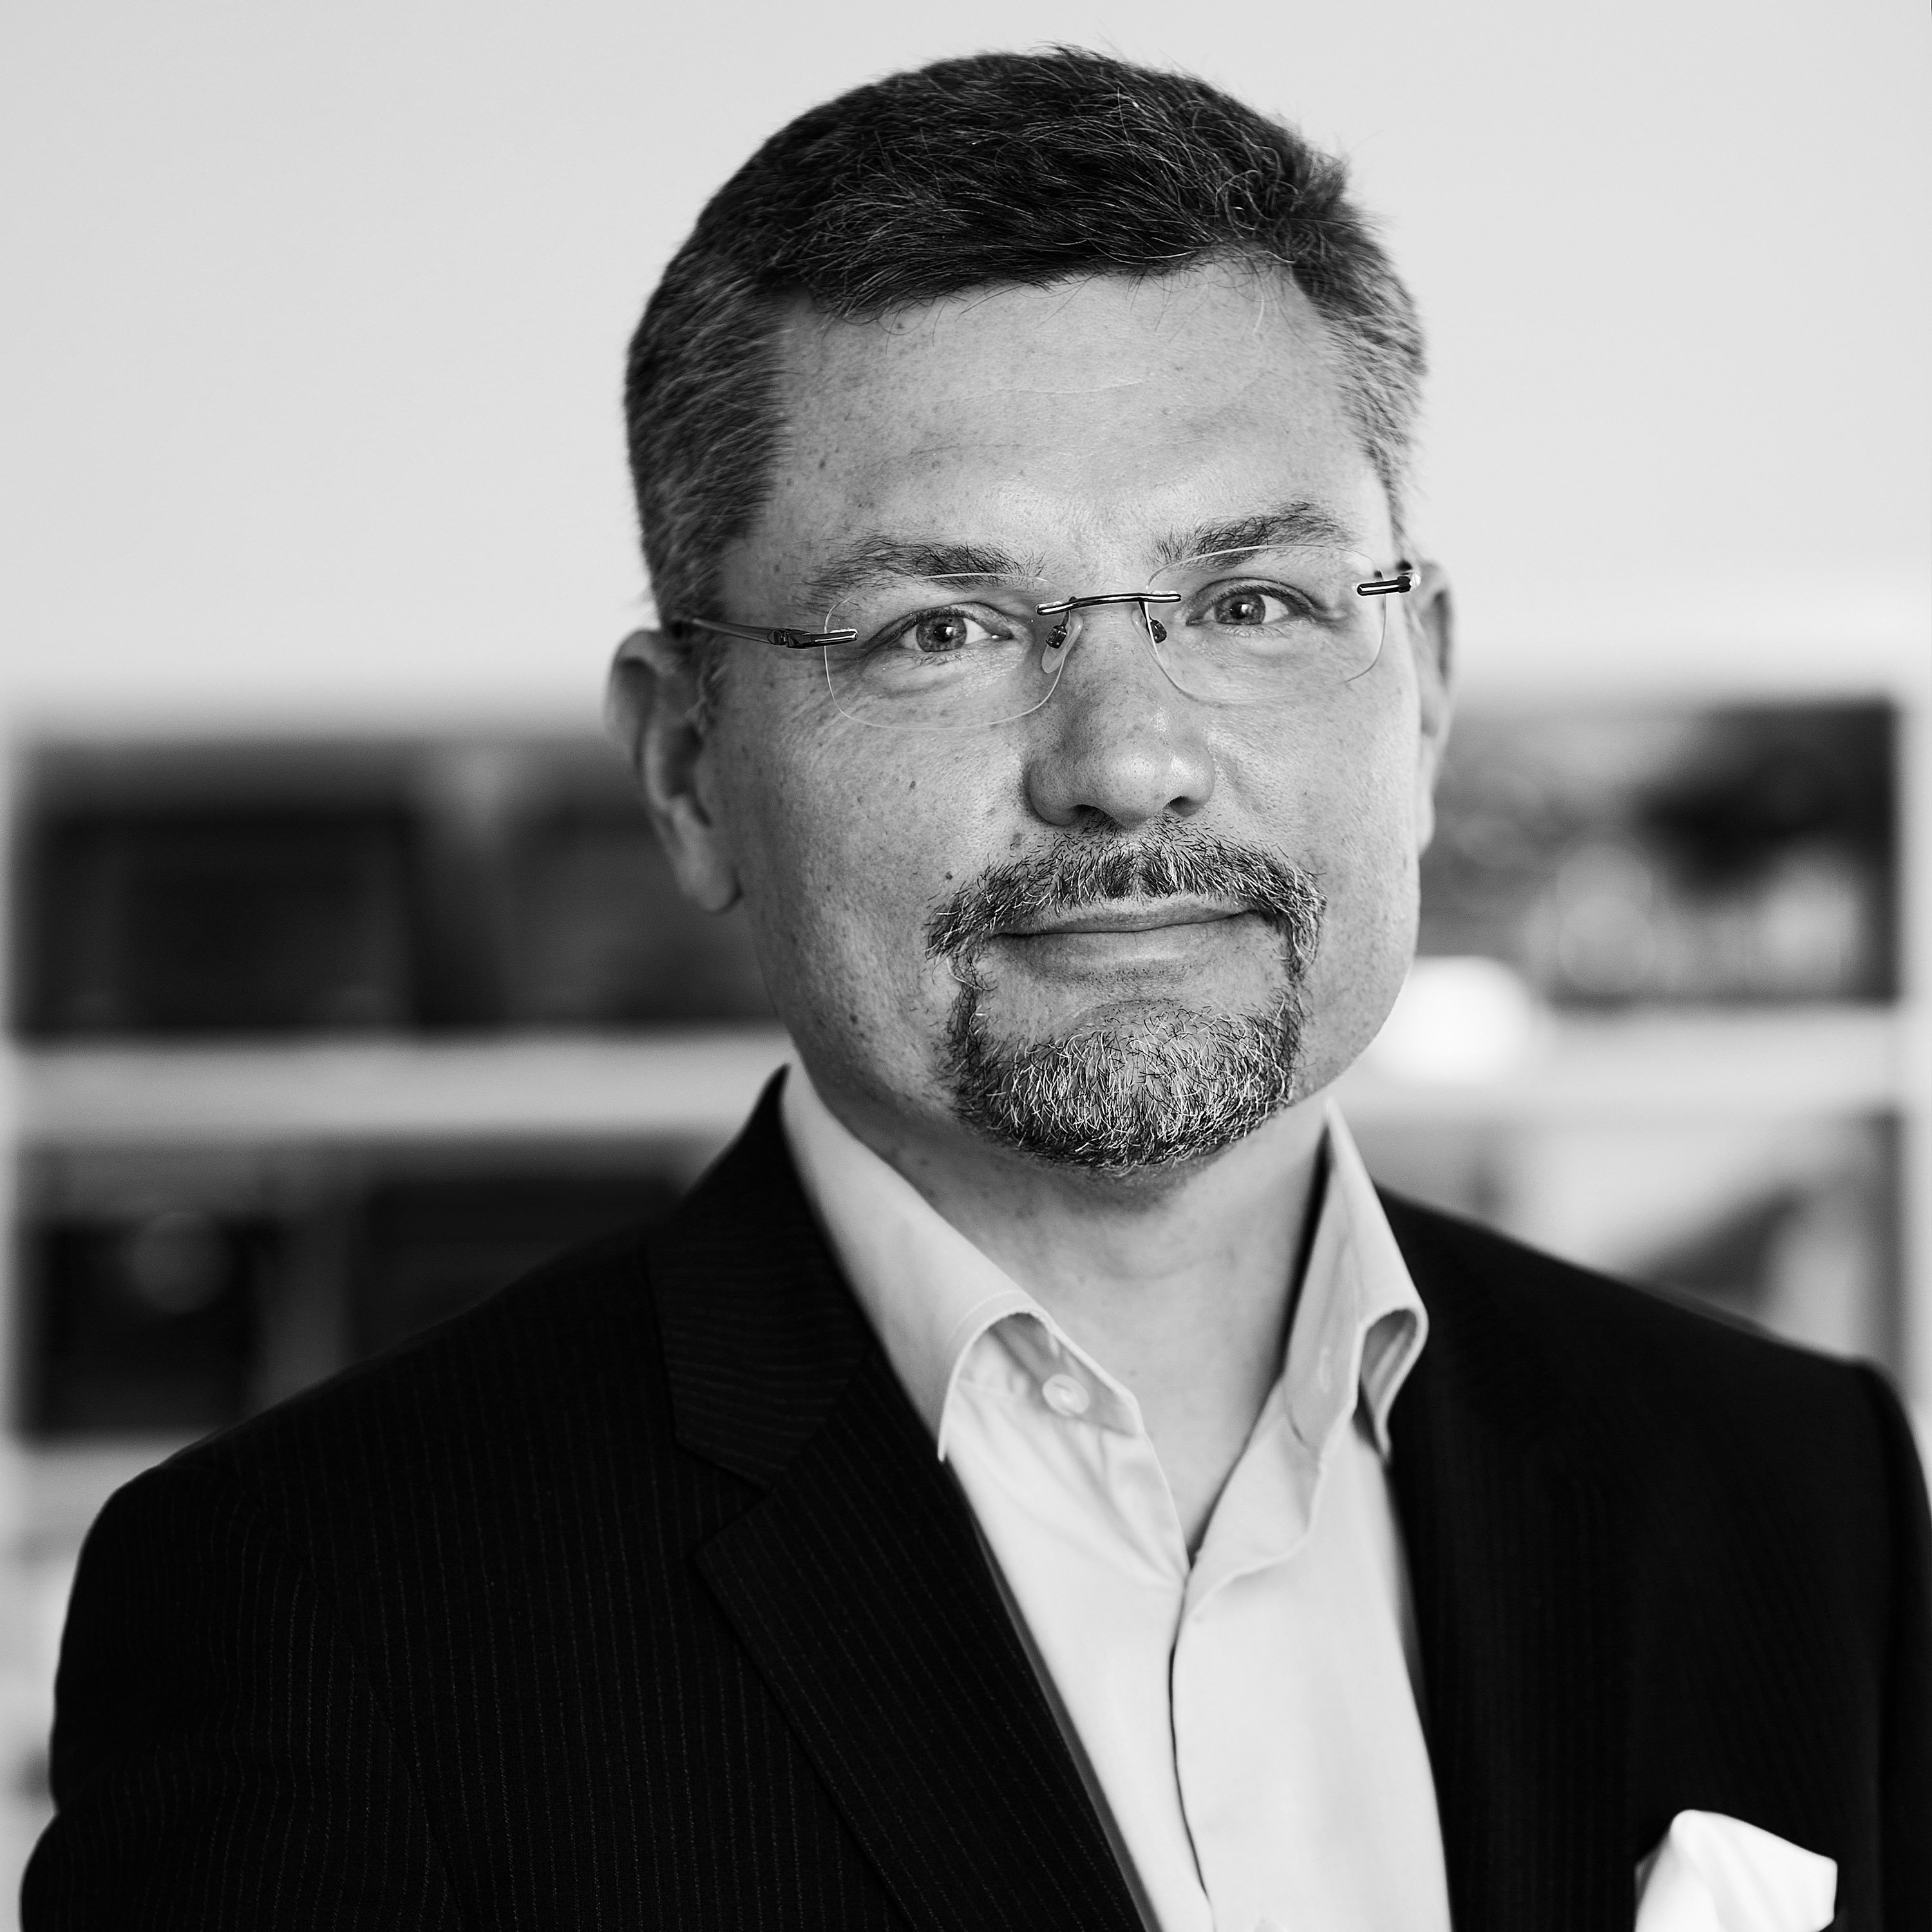 Henri_Osterlund_chairman